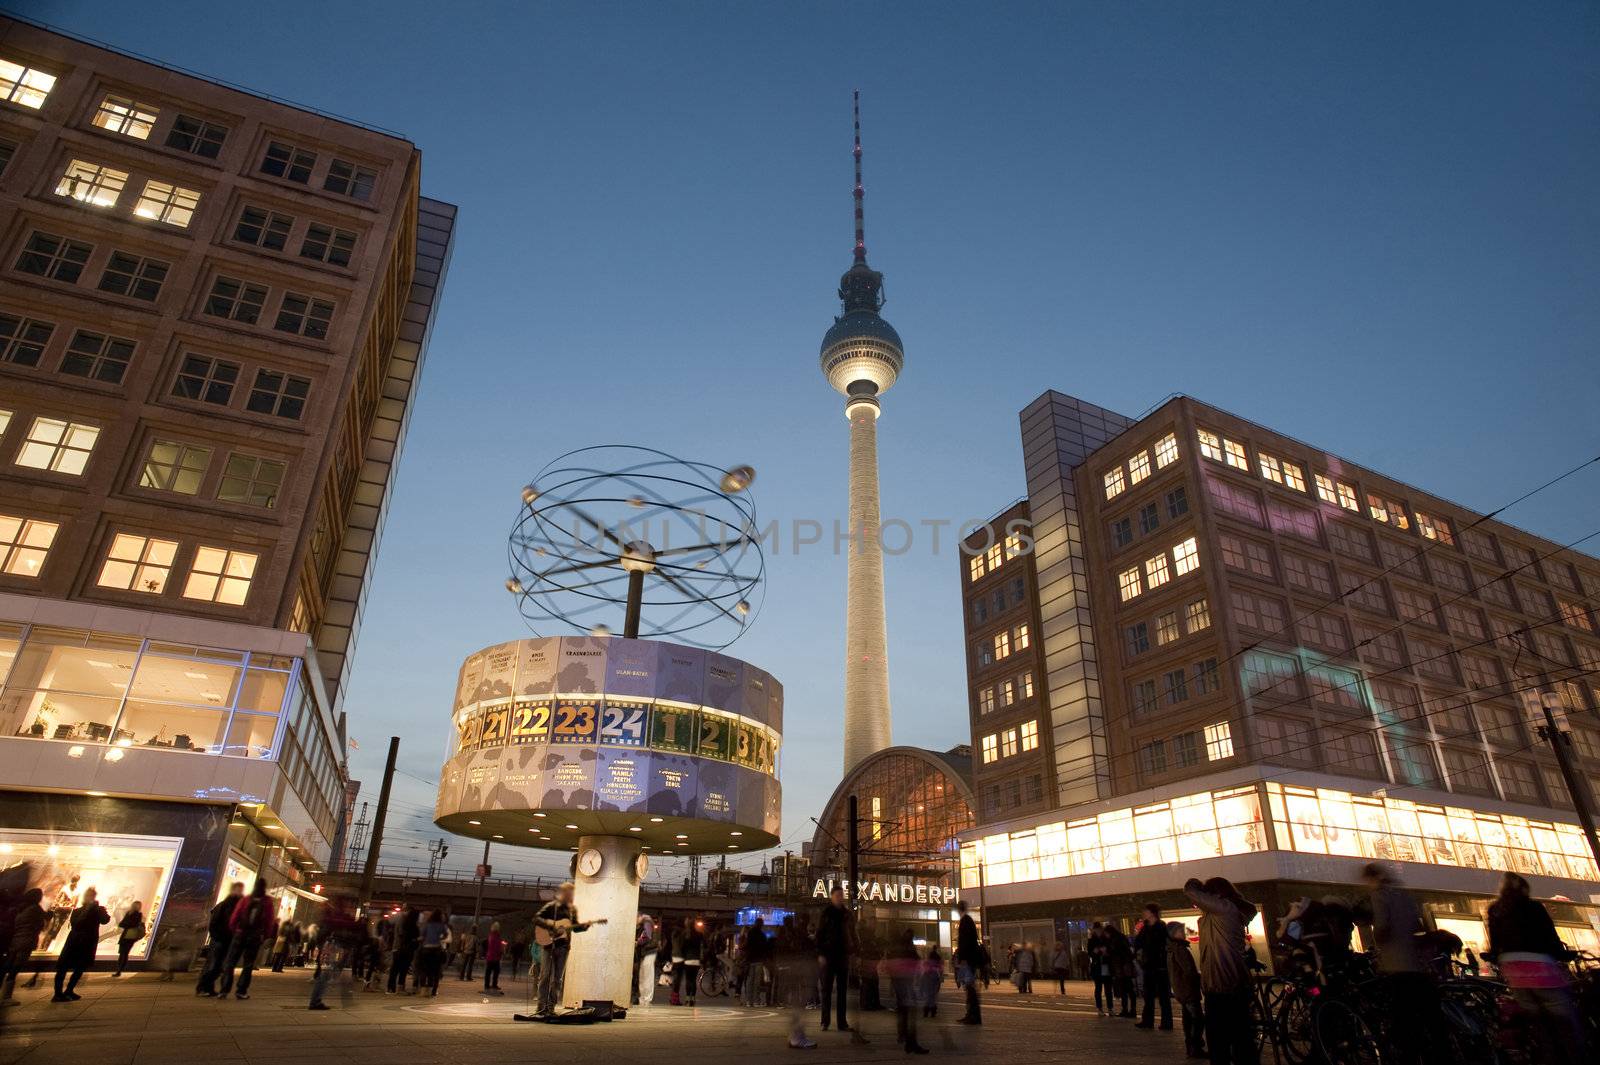 the main landmarks in alexanderplatz berlin, the fernsehturm tv tower and weltzeituhr world clock